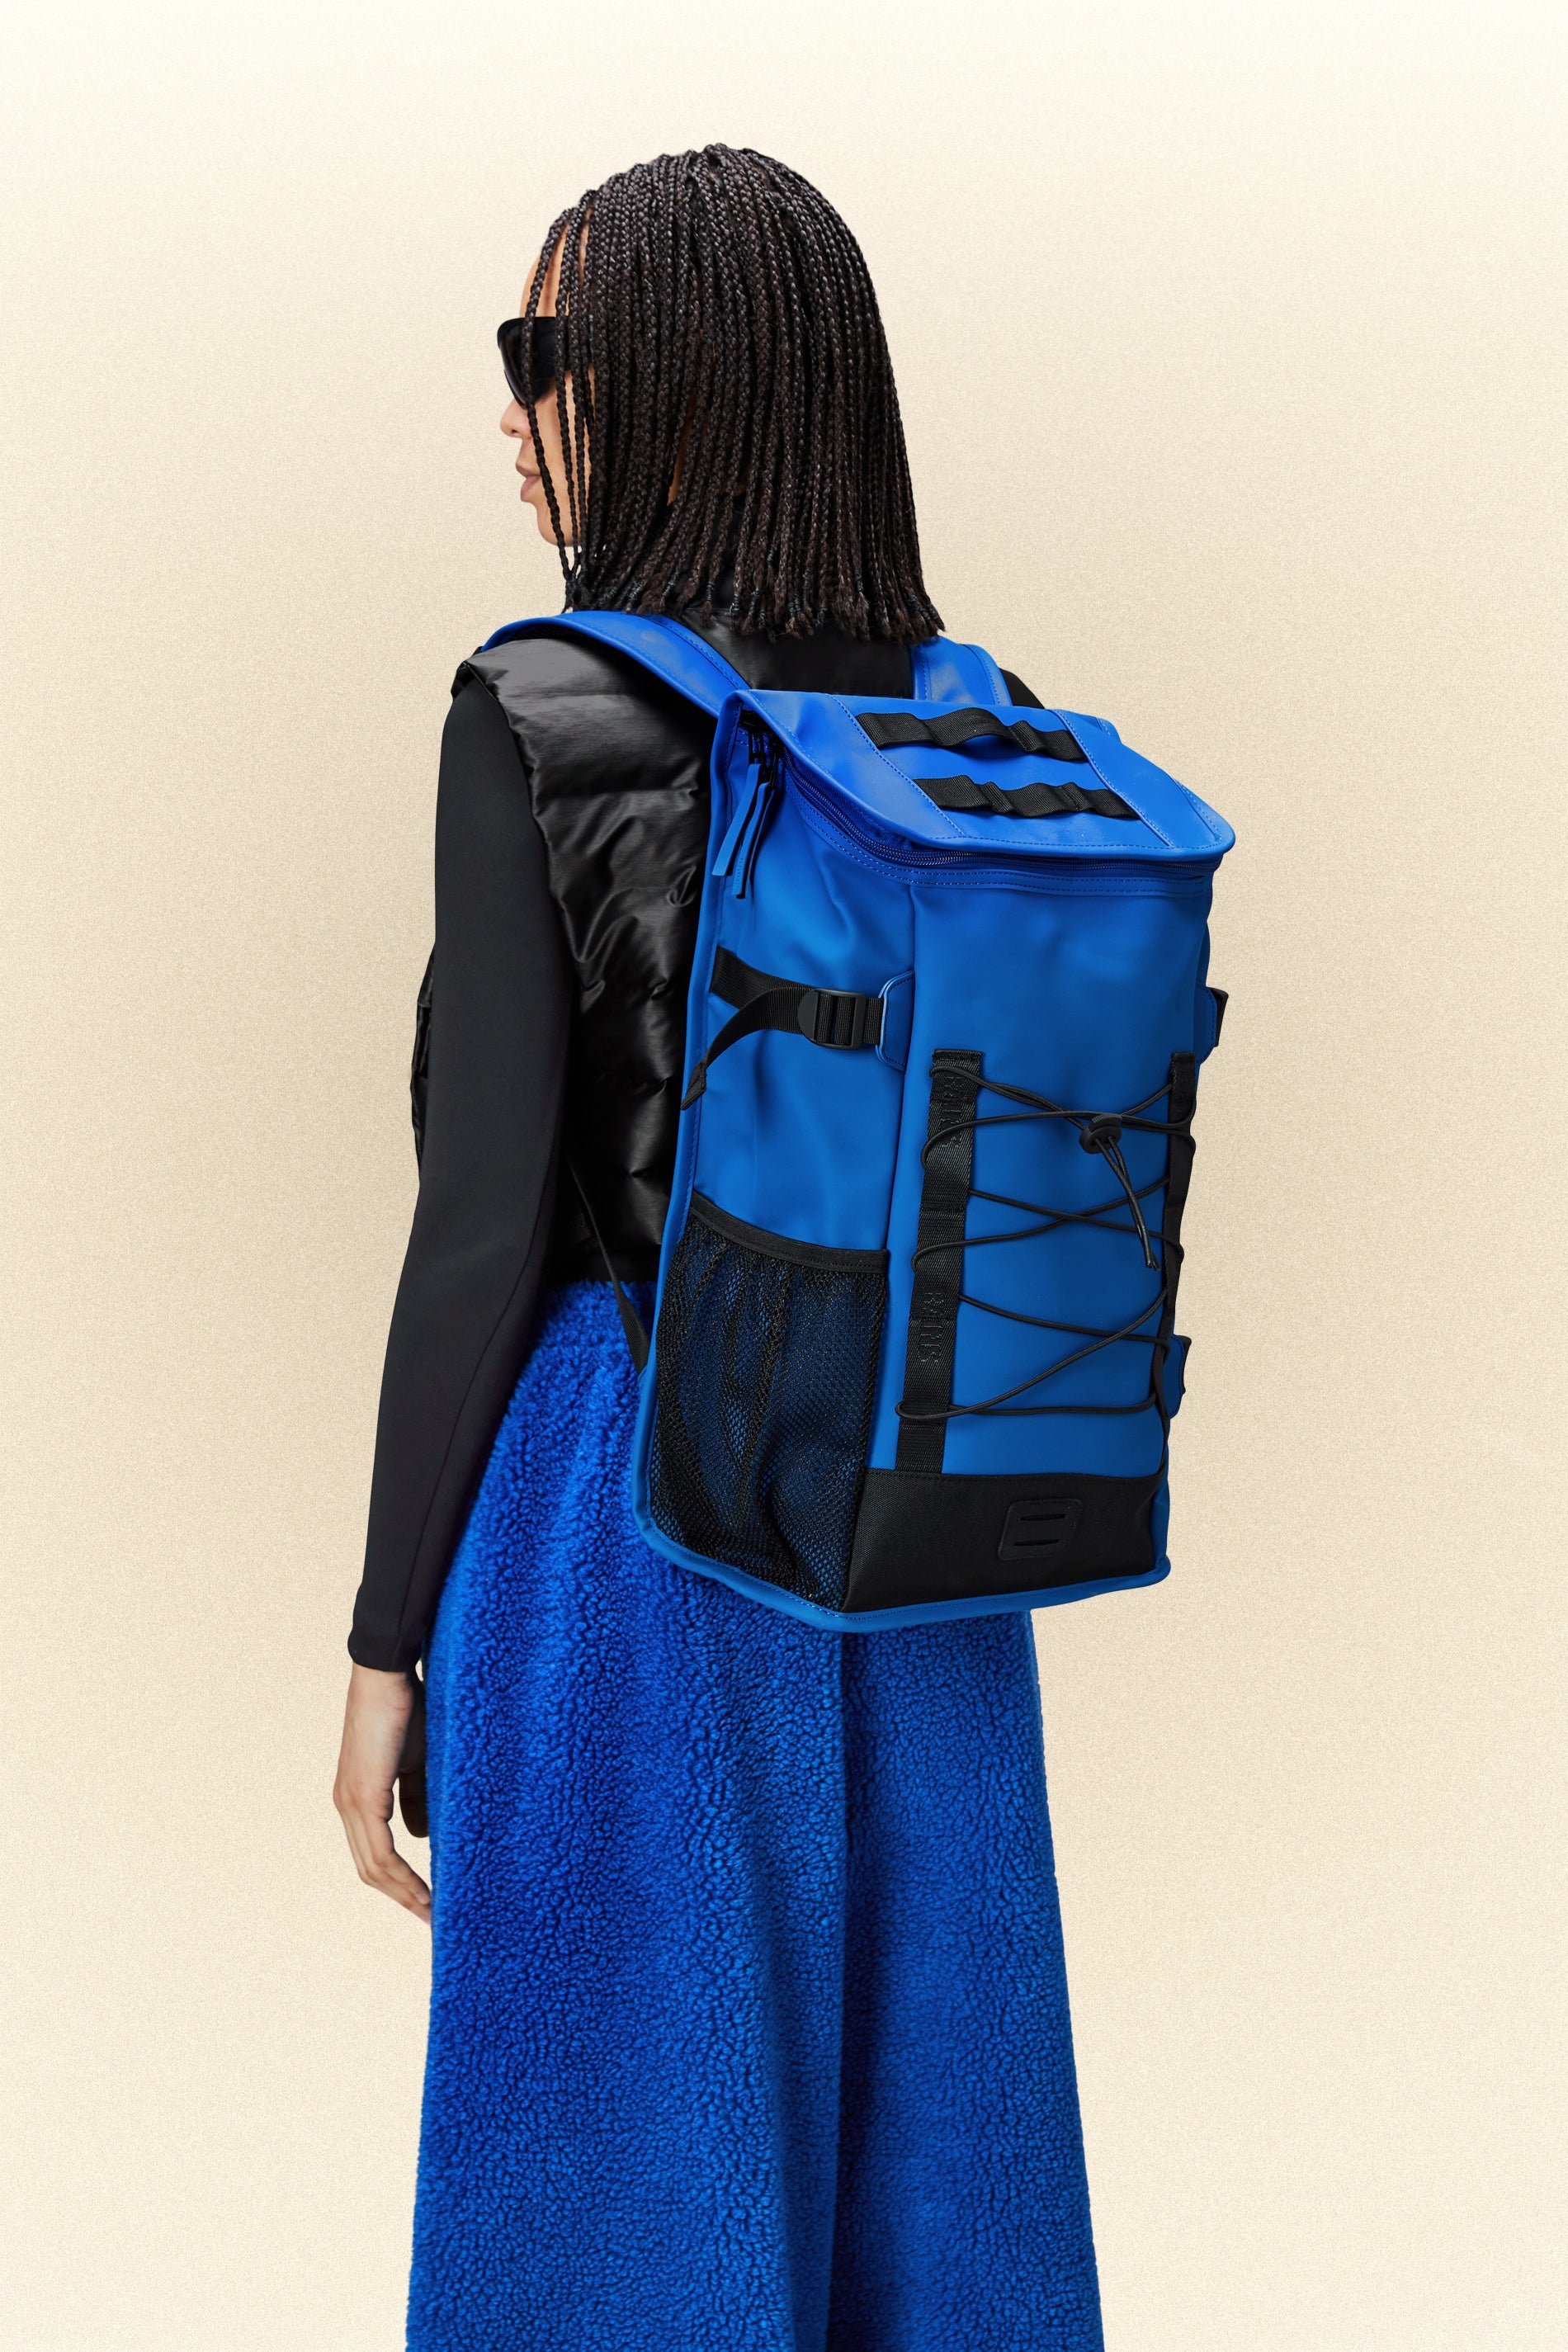 Waterproof Backpack | Buy Water Resistant Backpacks | Rains